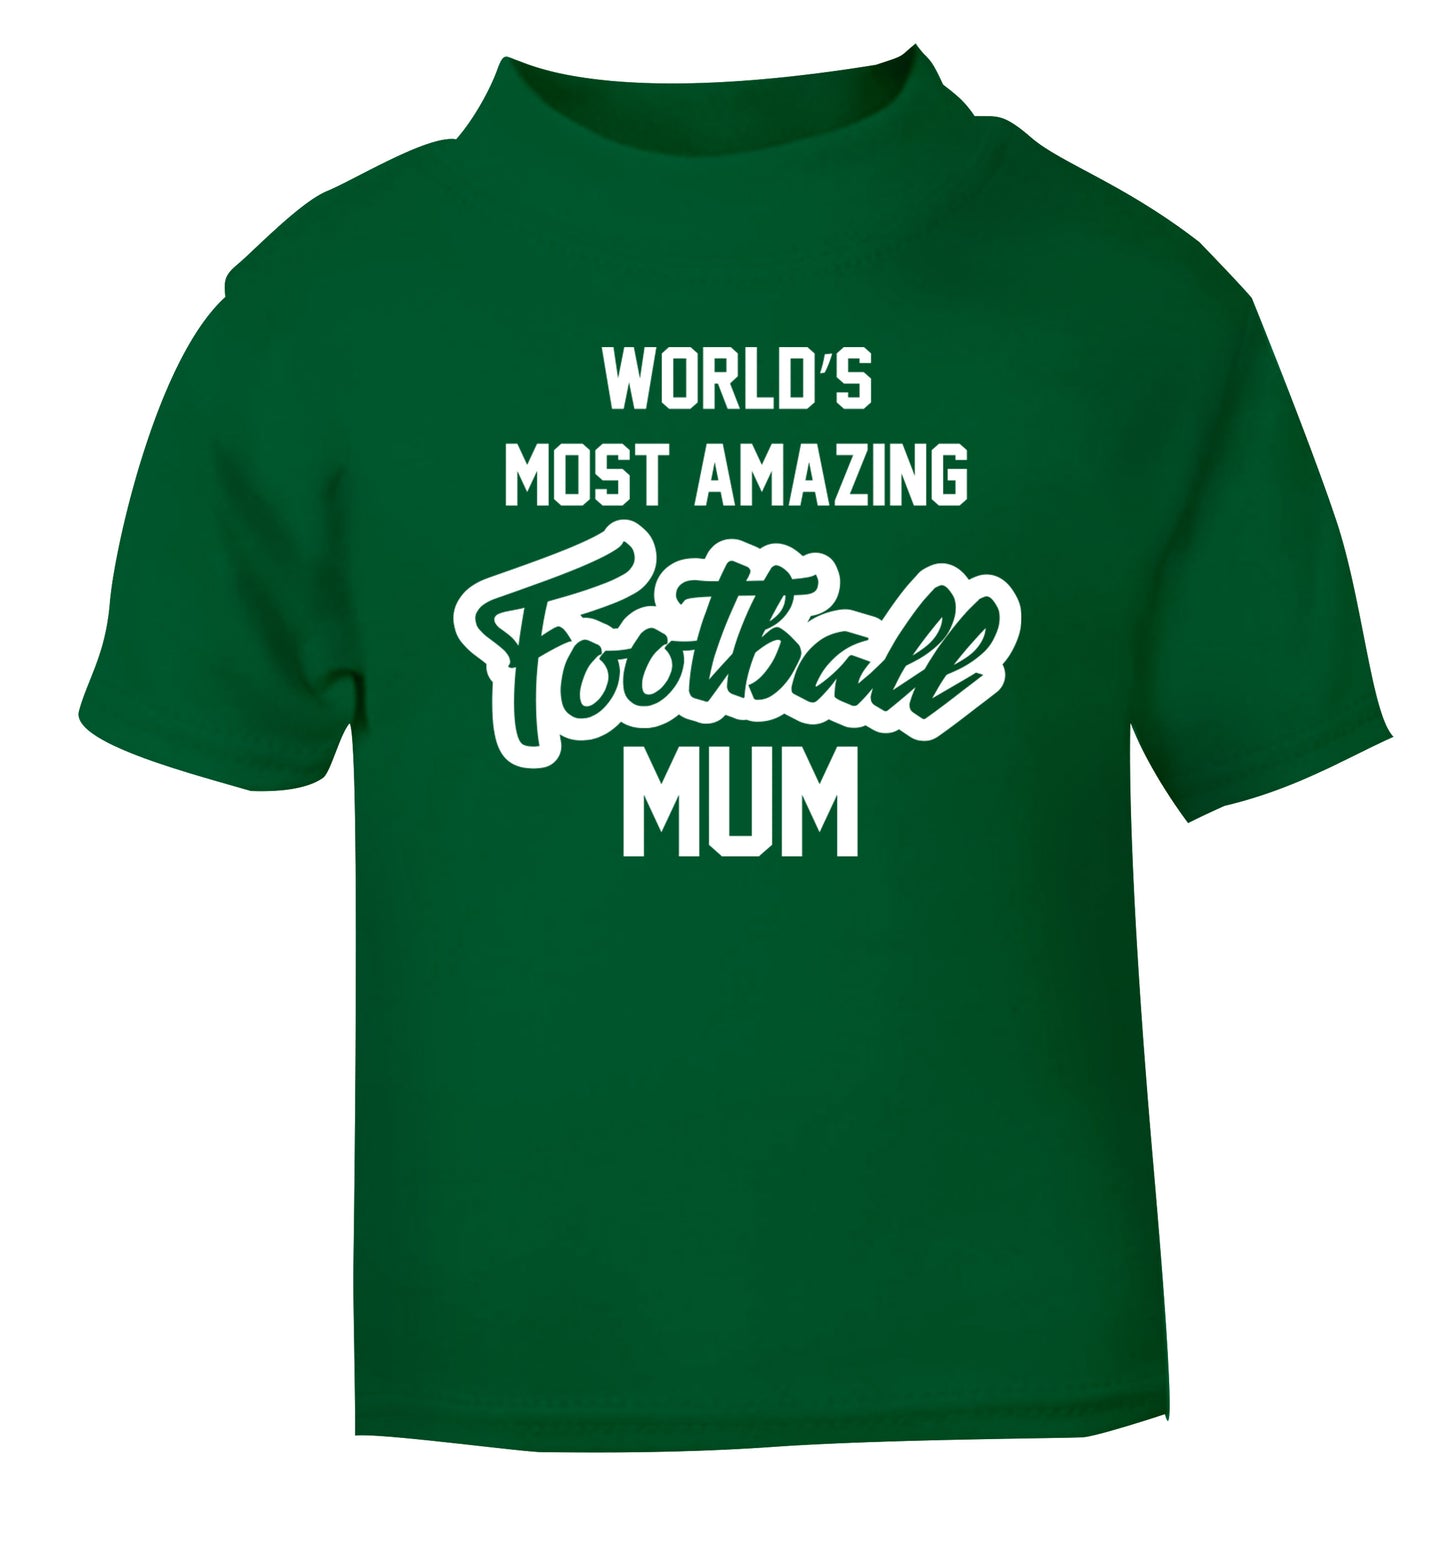 Worlds most amazing football mum green Baby Toddler Tshirt 2 Years